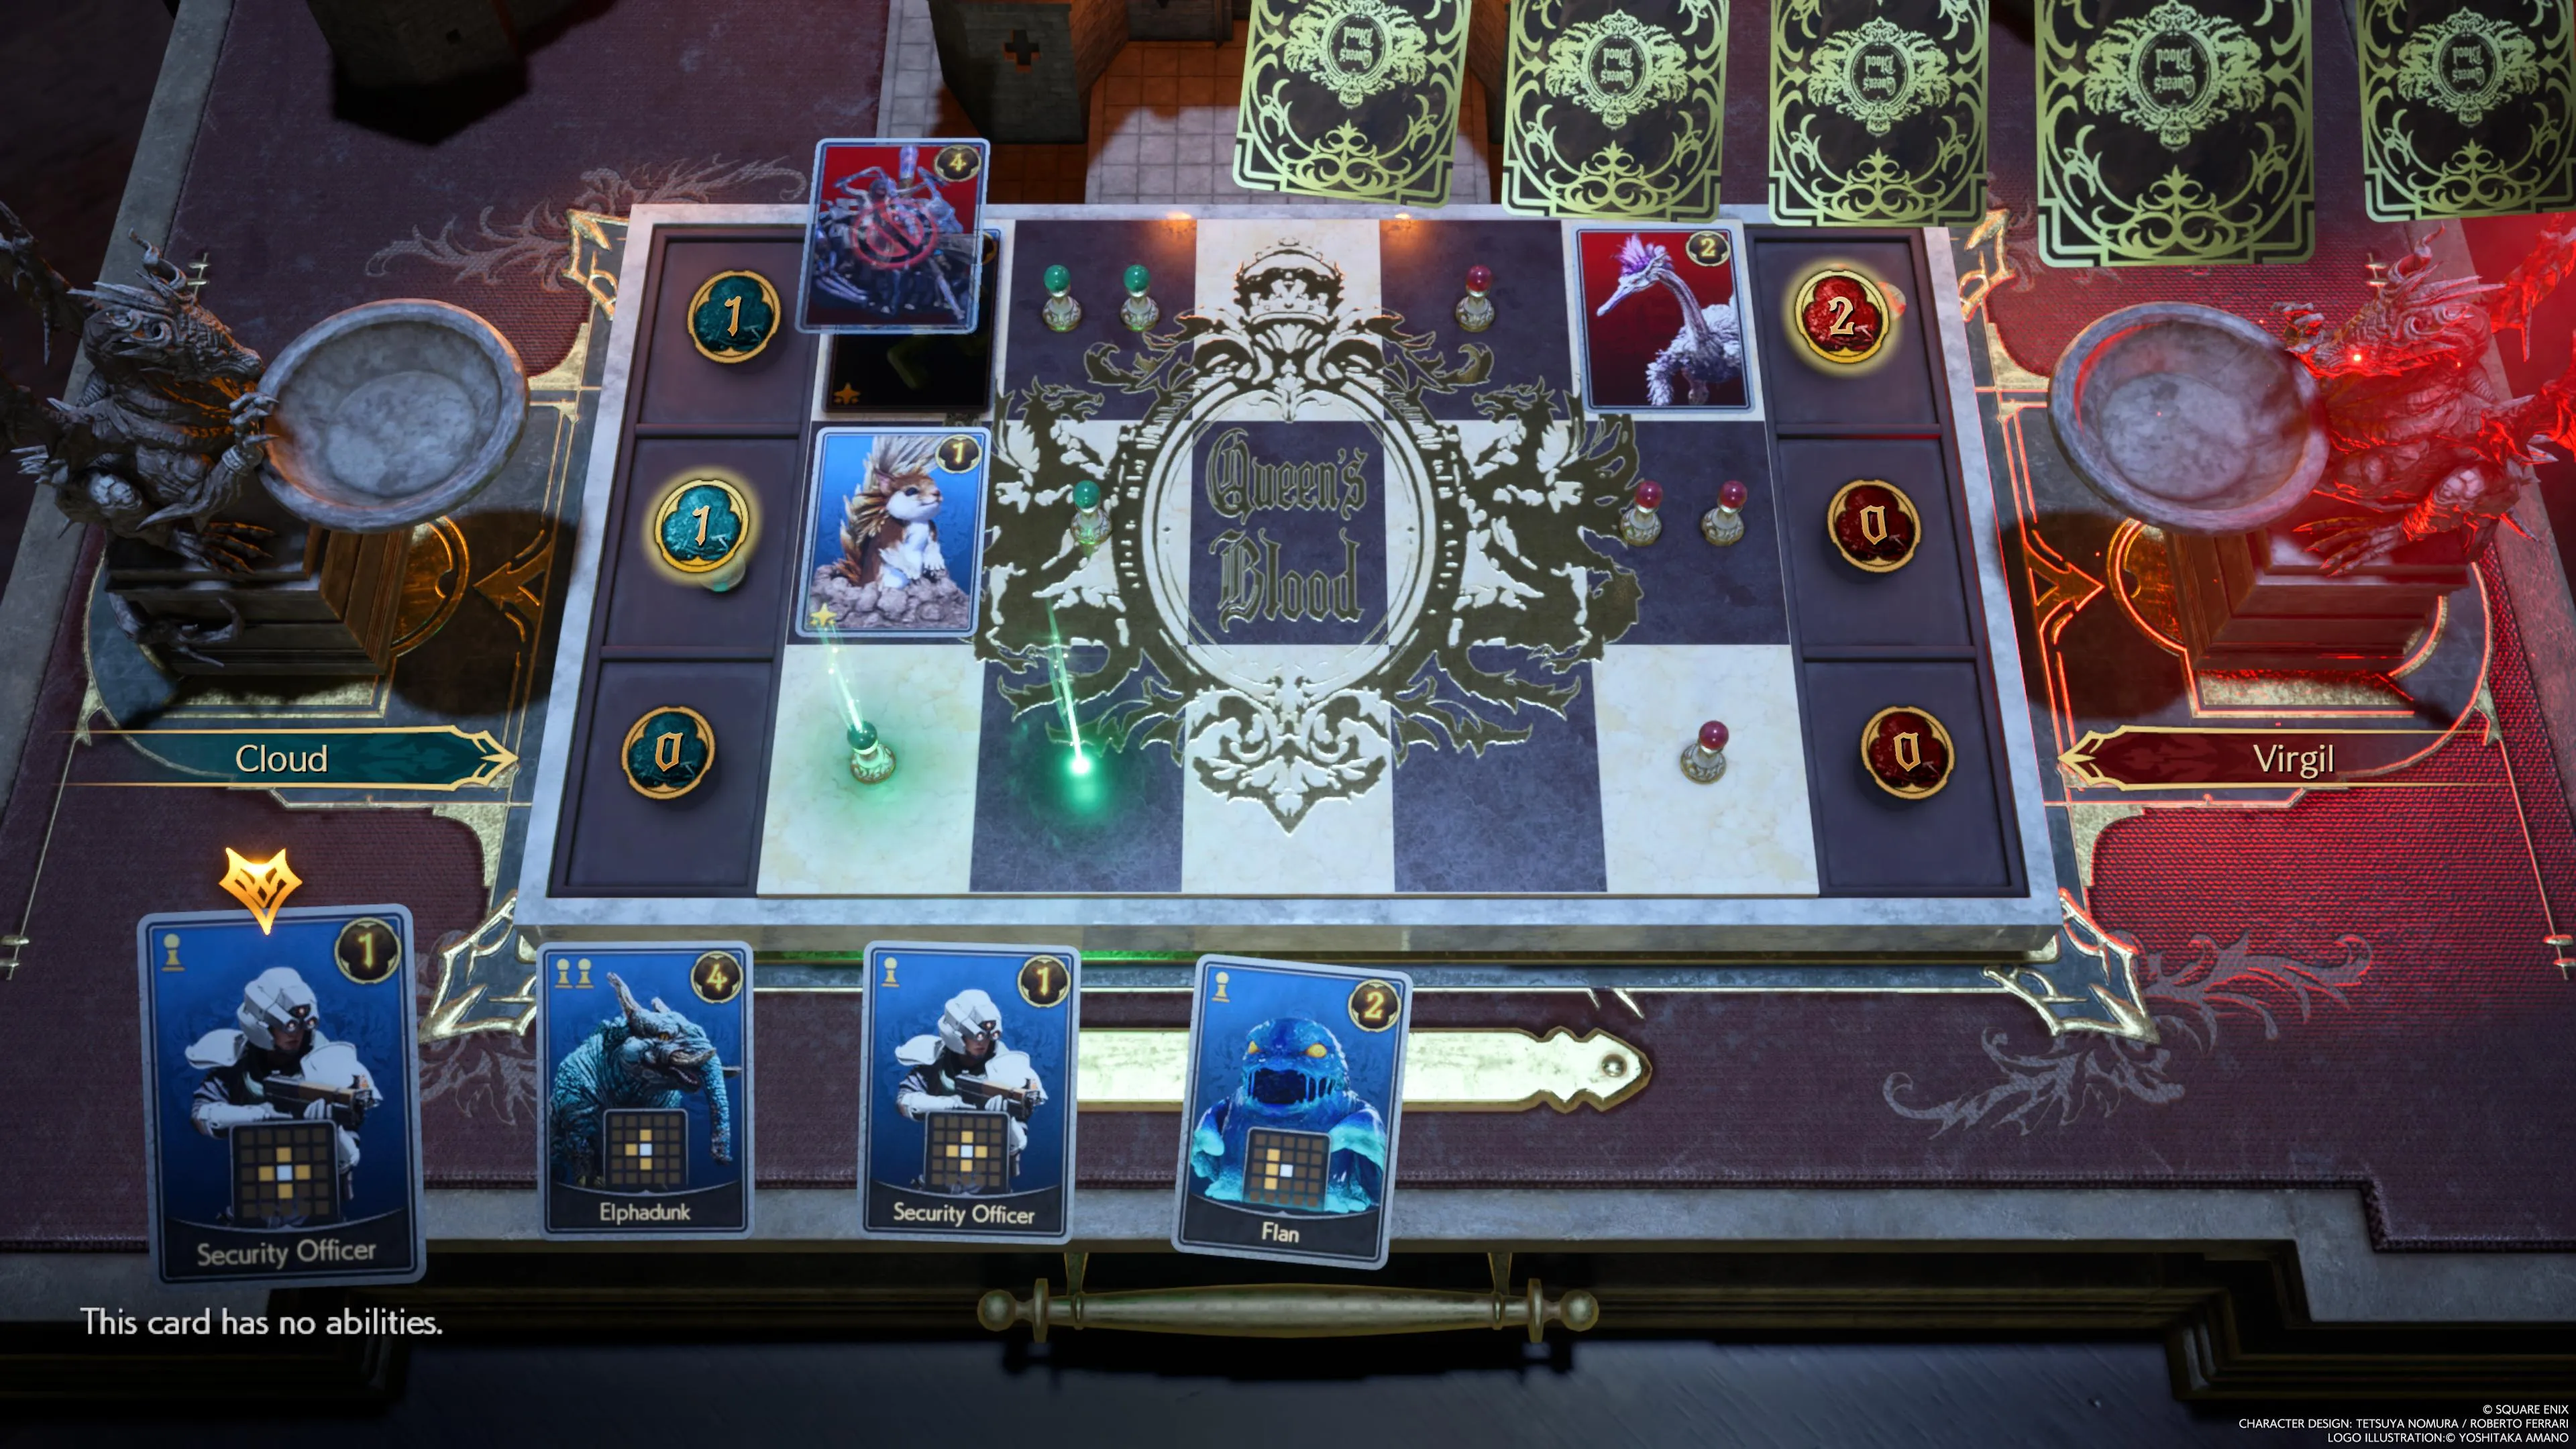 Oficial de seguridad de Shinra y otras cartas iniciales en la mano activa de Queen's Blood del jugador en FF7 Rebirth